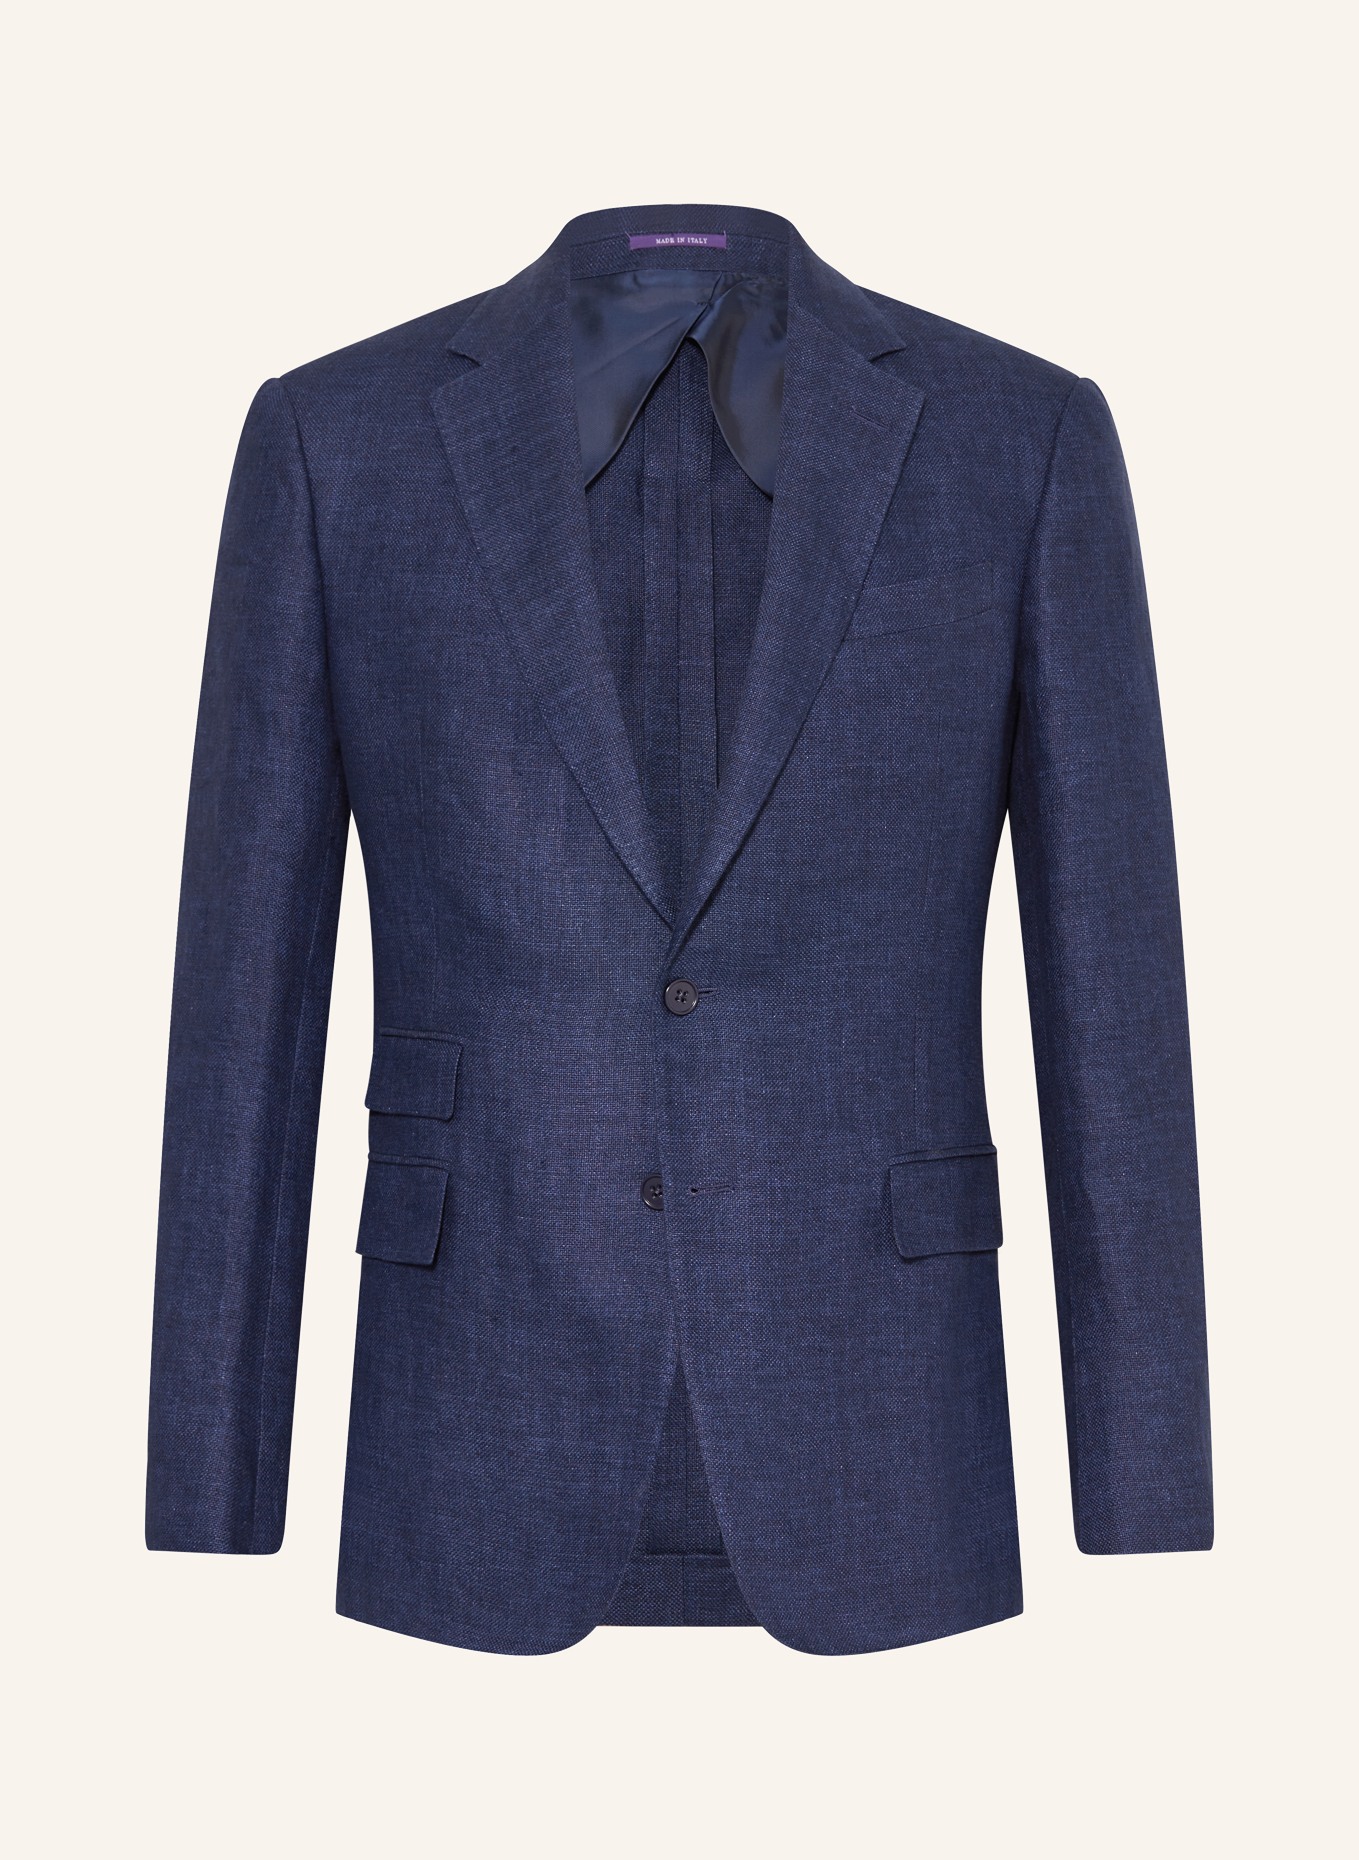 RALPH LAUREN PURPLE LABEL Suit jacket extra slim fit in linen, Color: DARK BLUE (Image 1)